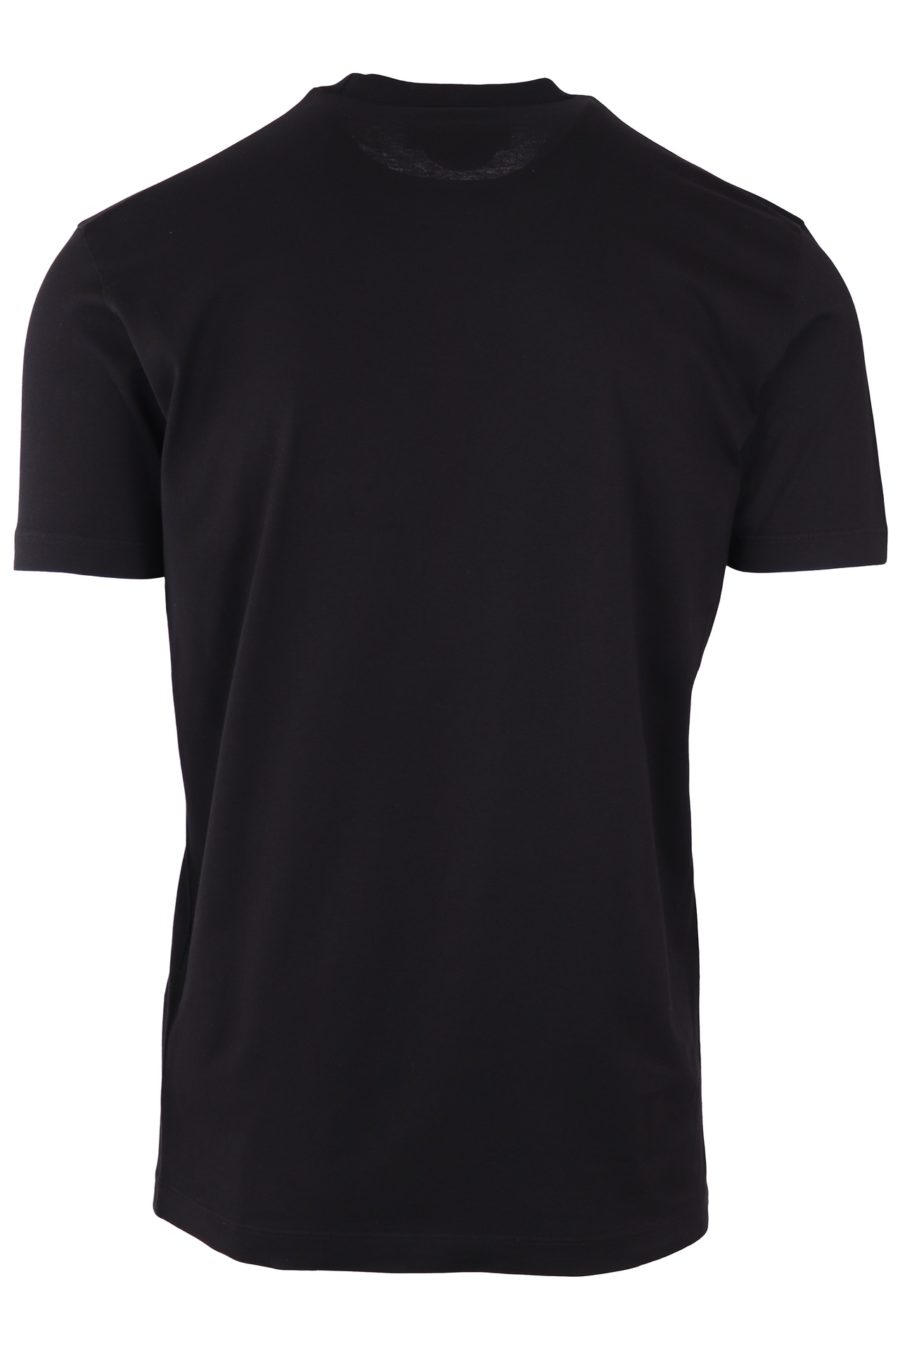 T-shirt Dsquared2 schwarz mit blauem und rotem Logo - 7e8b9f9316cba54f2d72f5f8d9c3d092bfb51e1f